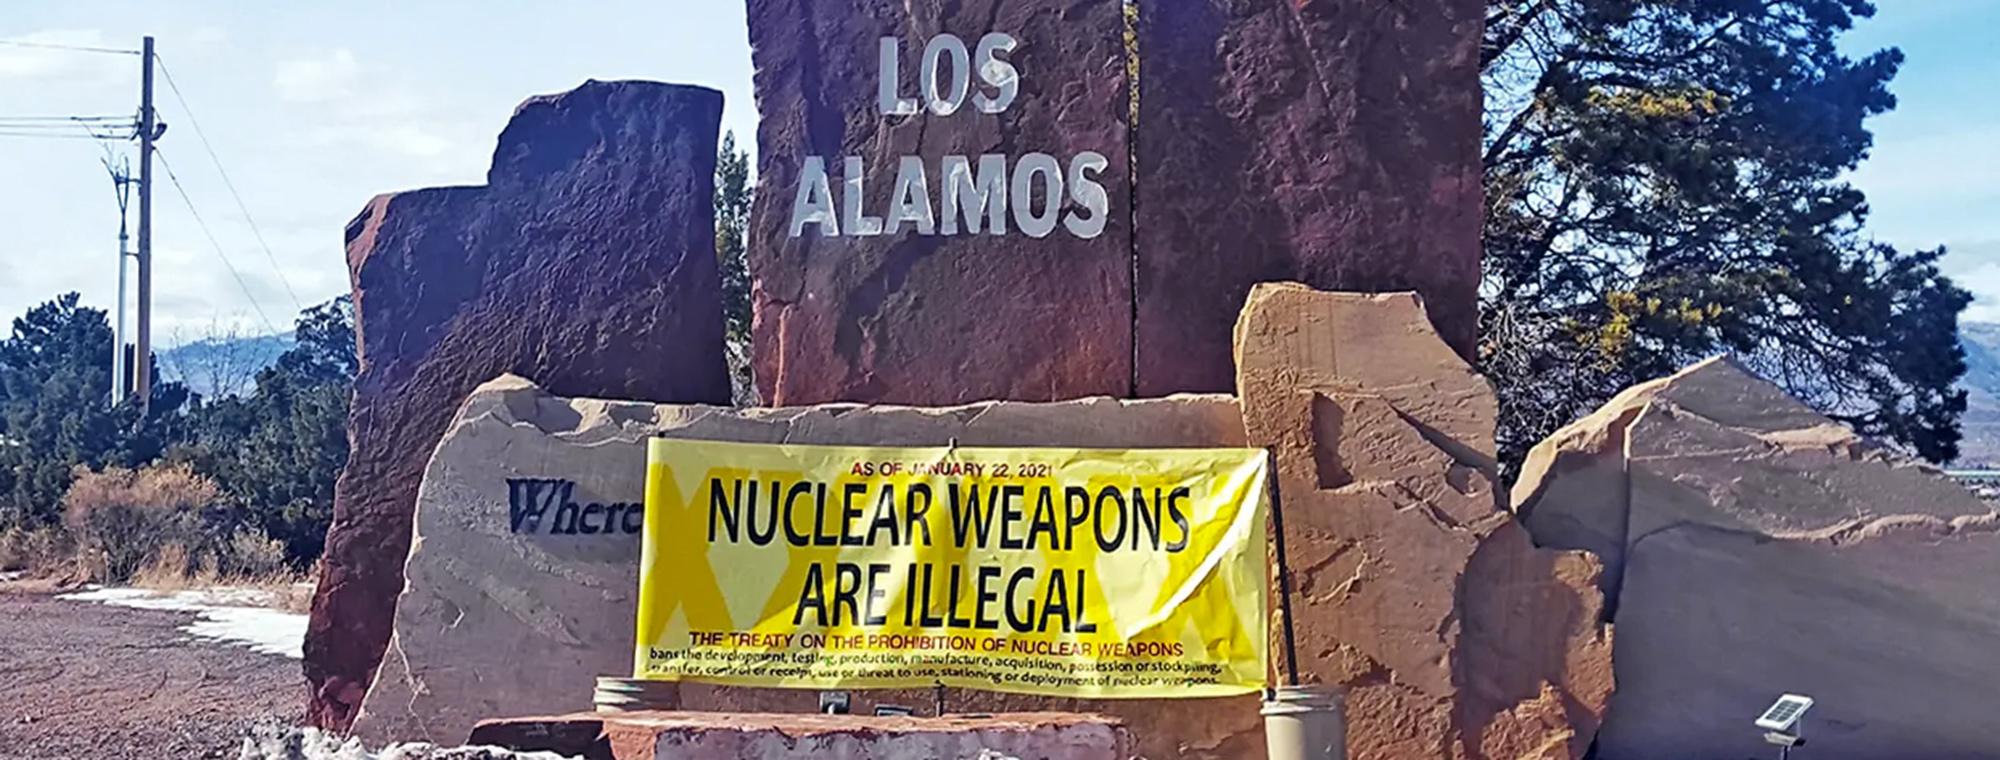 An activist's sign an Los Alamos